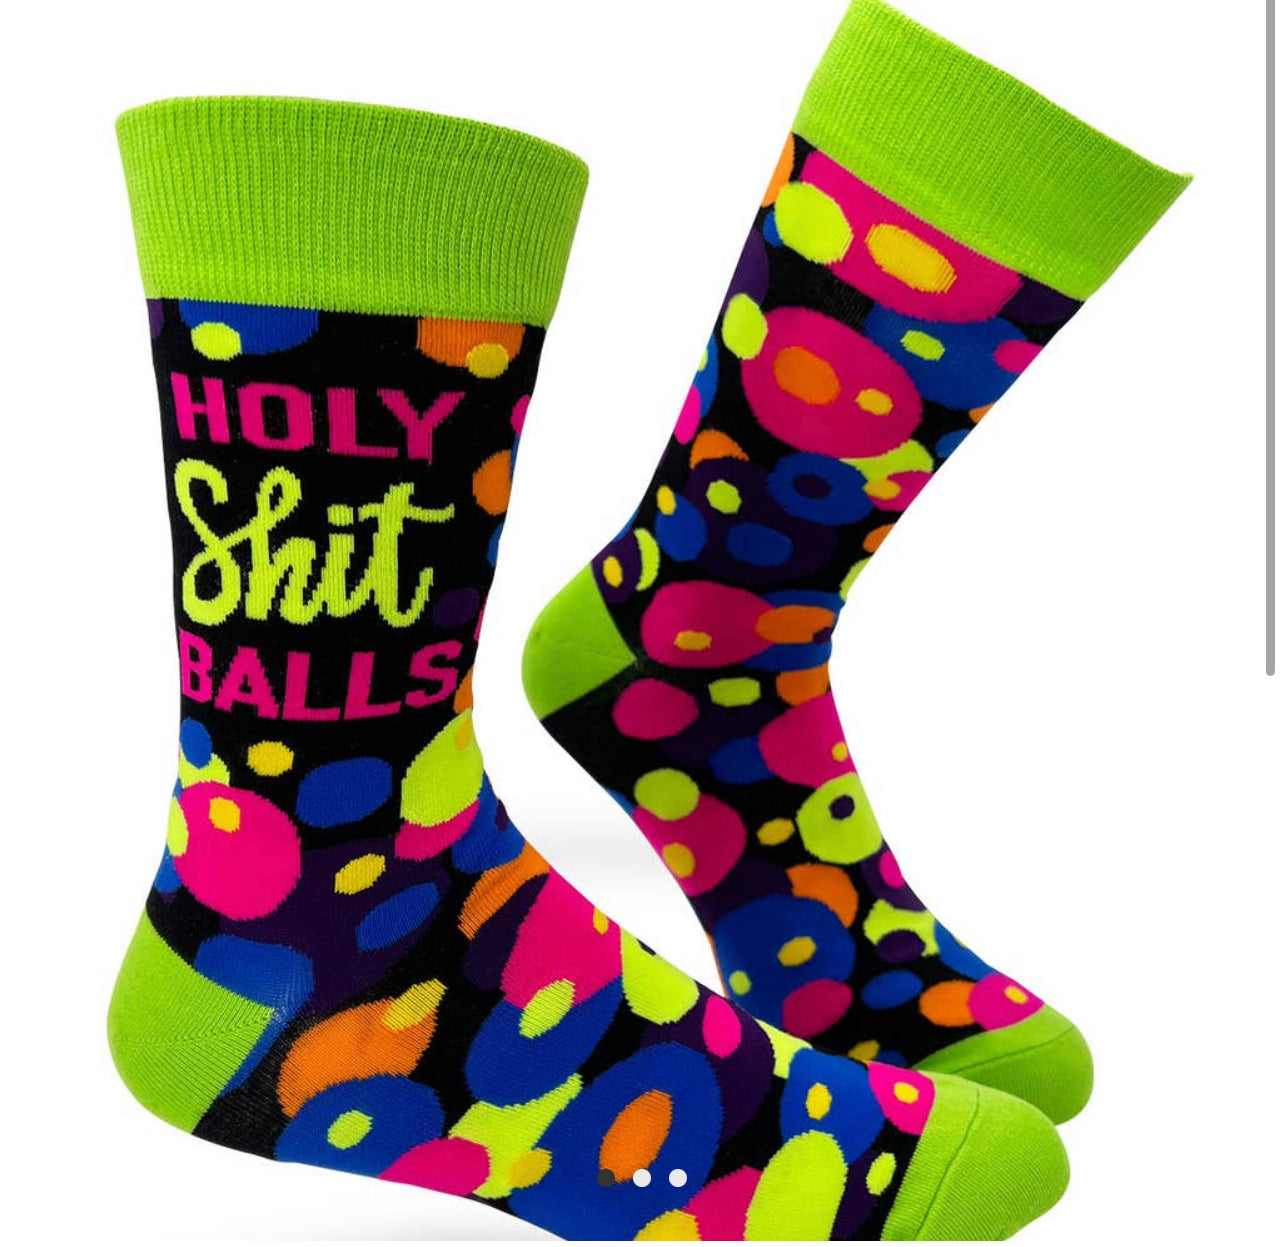 Fun Socks